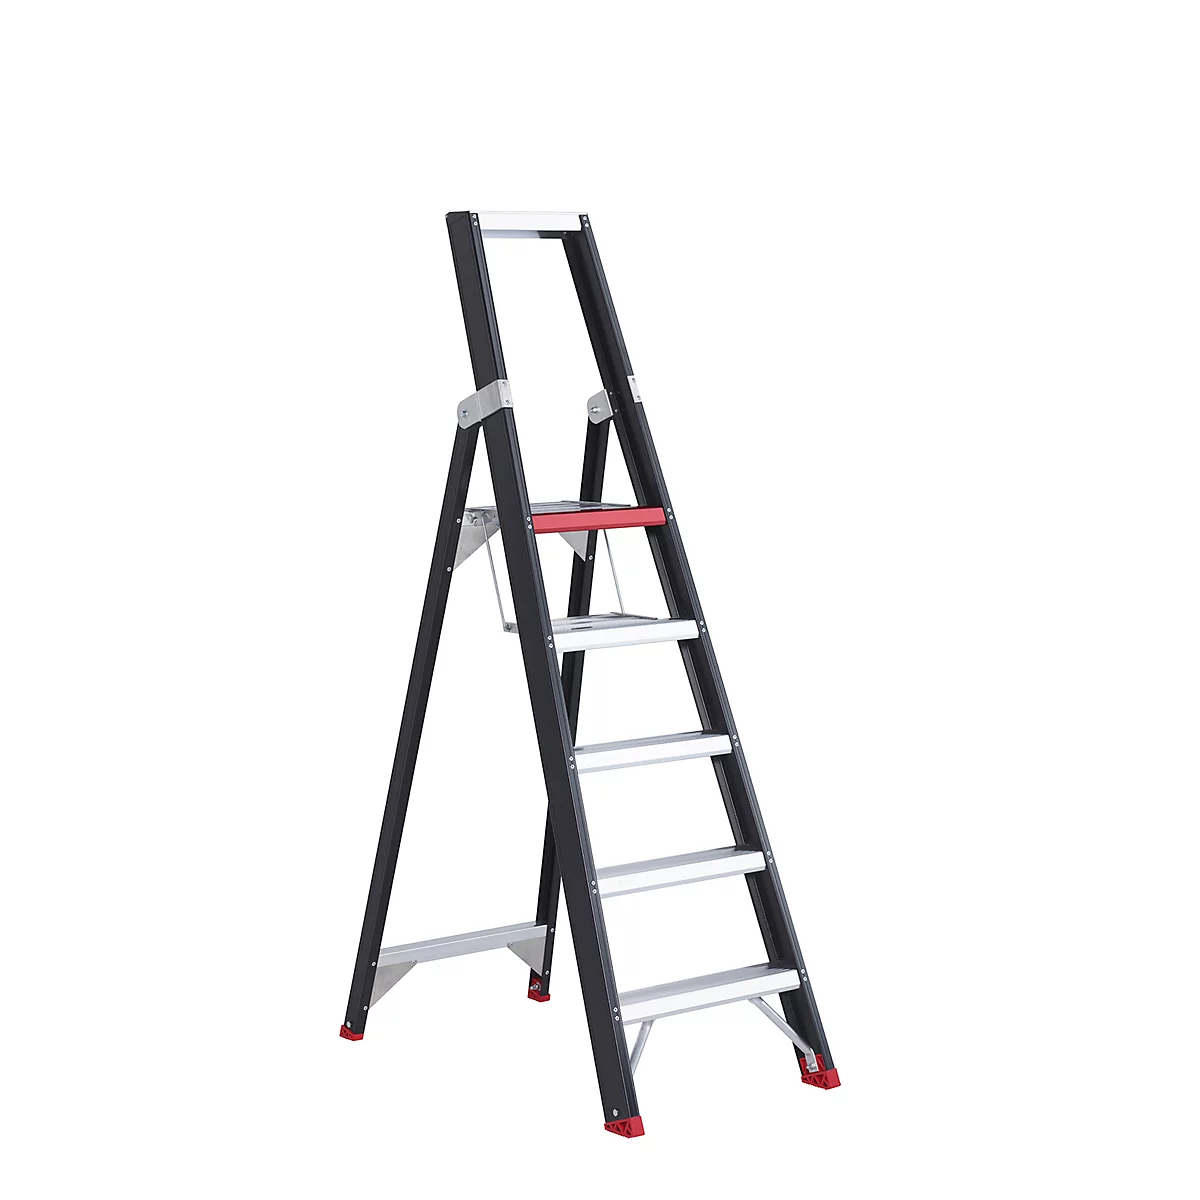 Escalera de tijera Professional Topline, unilateral, aluminio, 5 escalones, negro